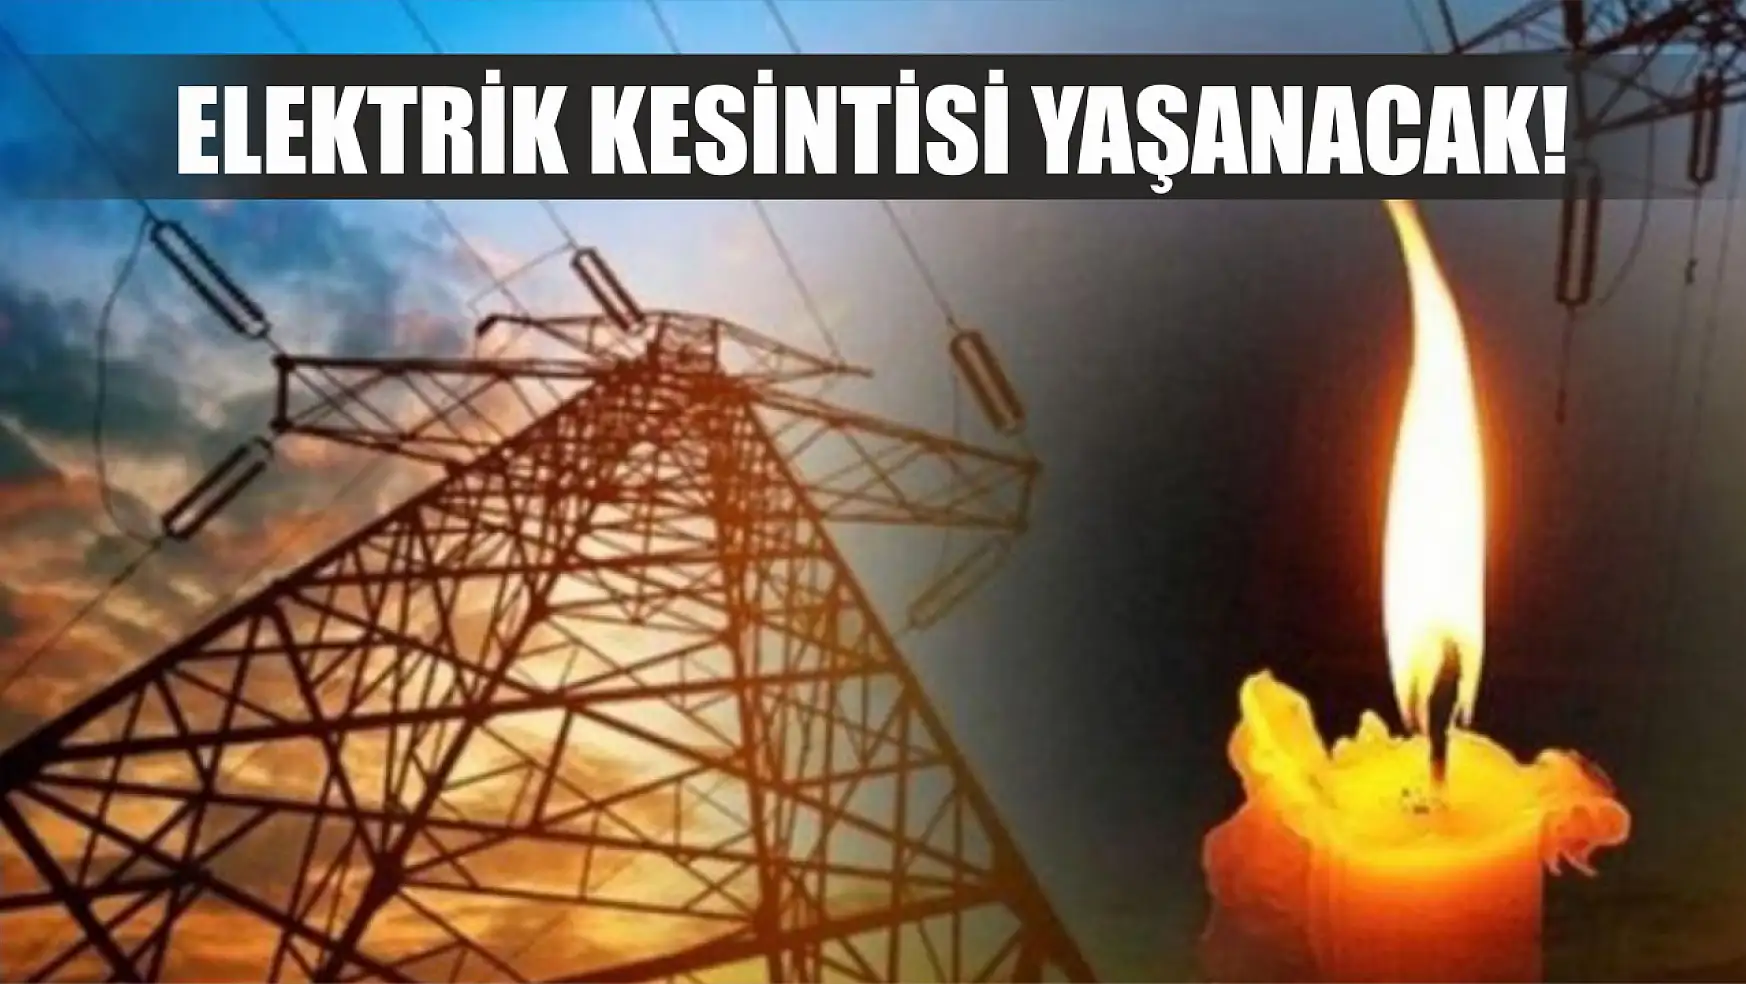 Fethiye ve Seydikemer'de elektrik kesintisi yaşanacak